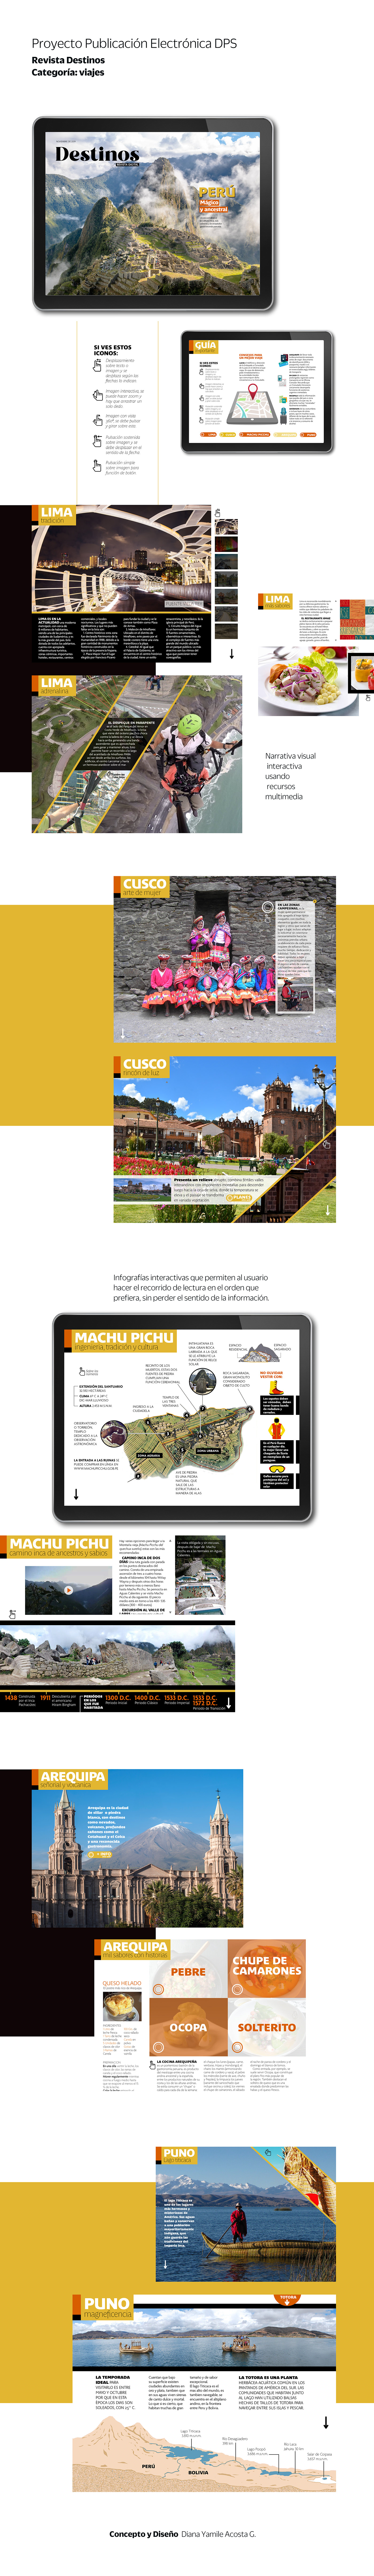 graphic design  editorial design  Magazine design digital design diagramming epub electronic publication